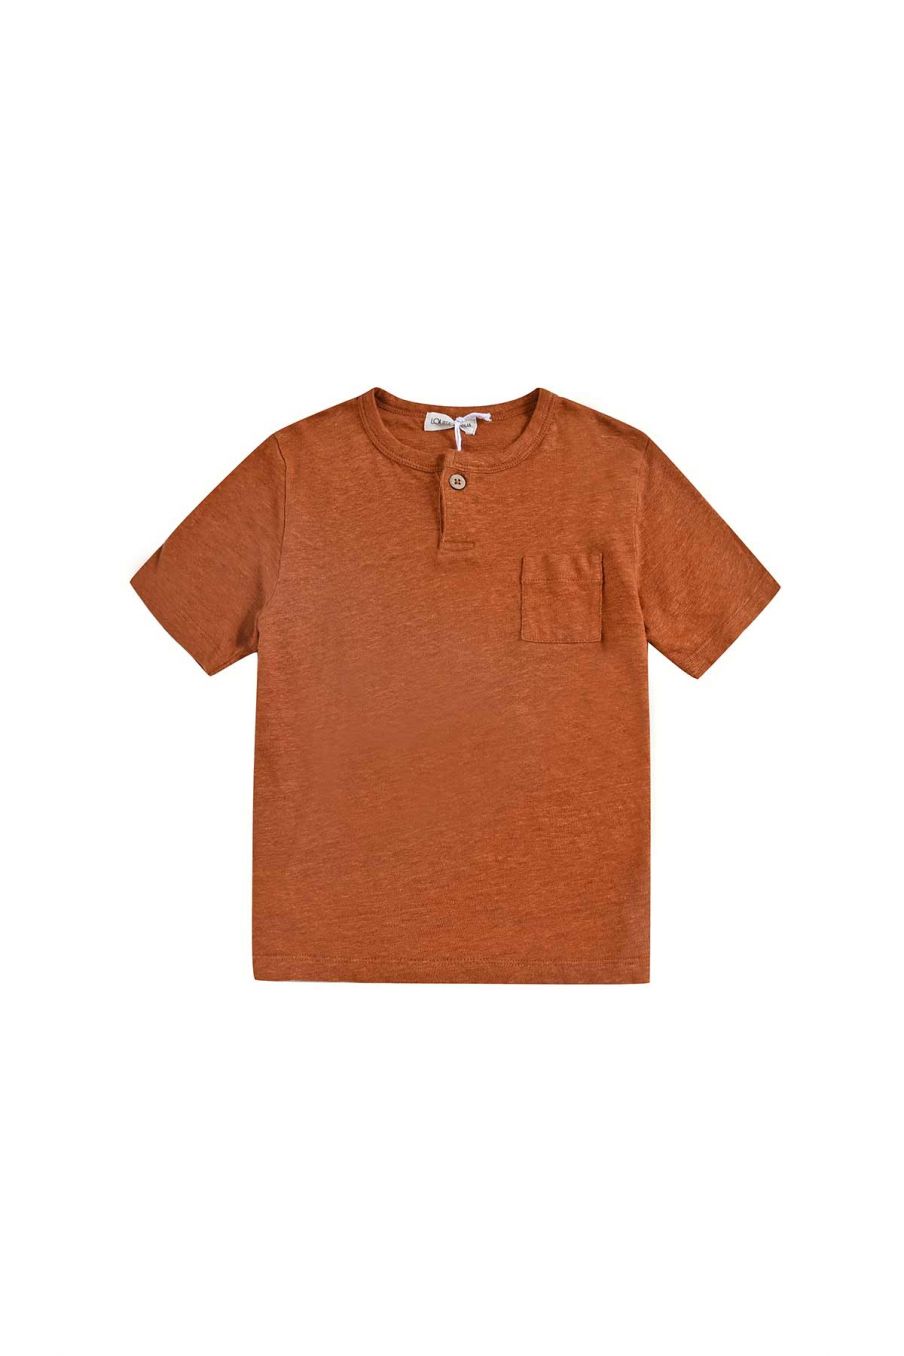 bebe-unisexe-t-shirt-tazo-cinnamon